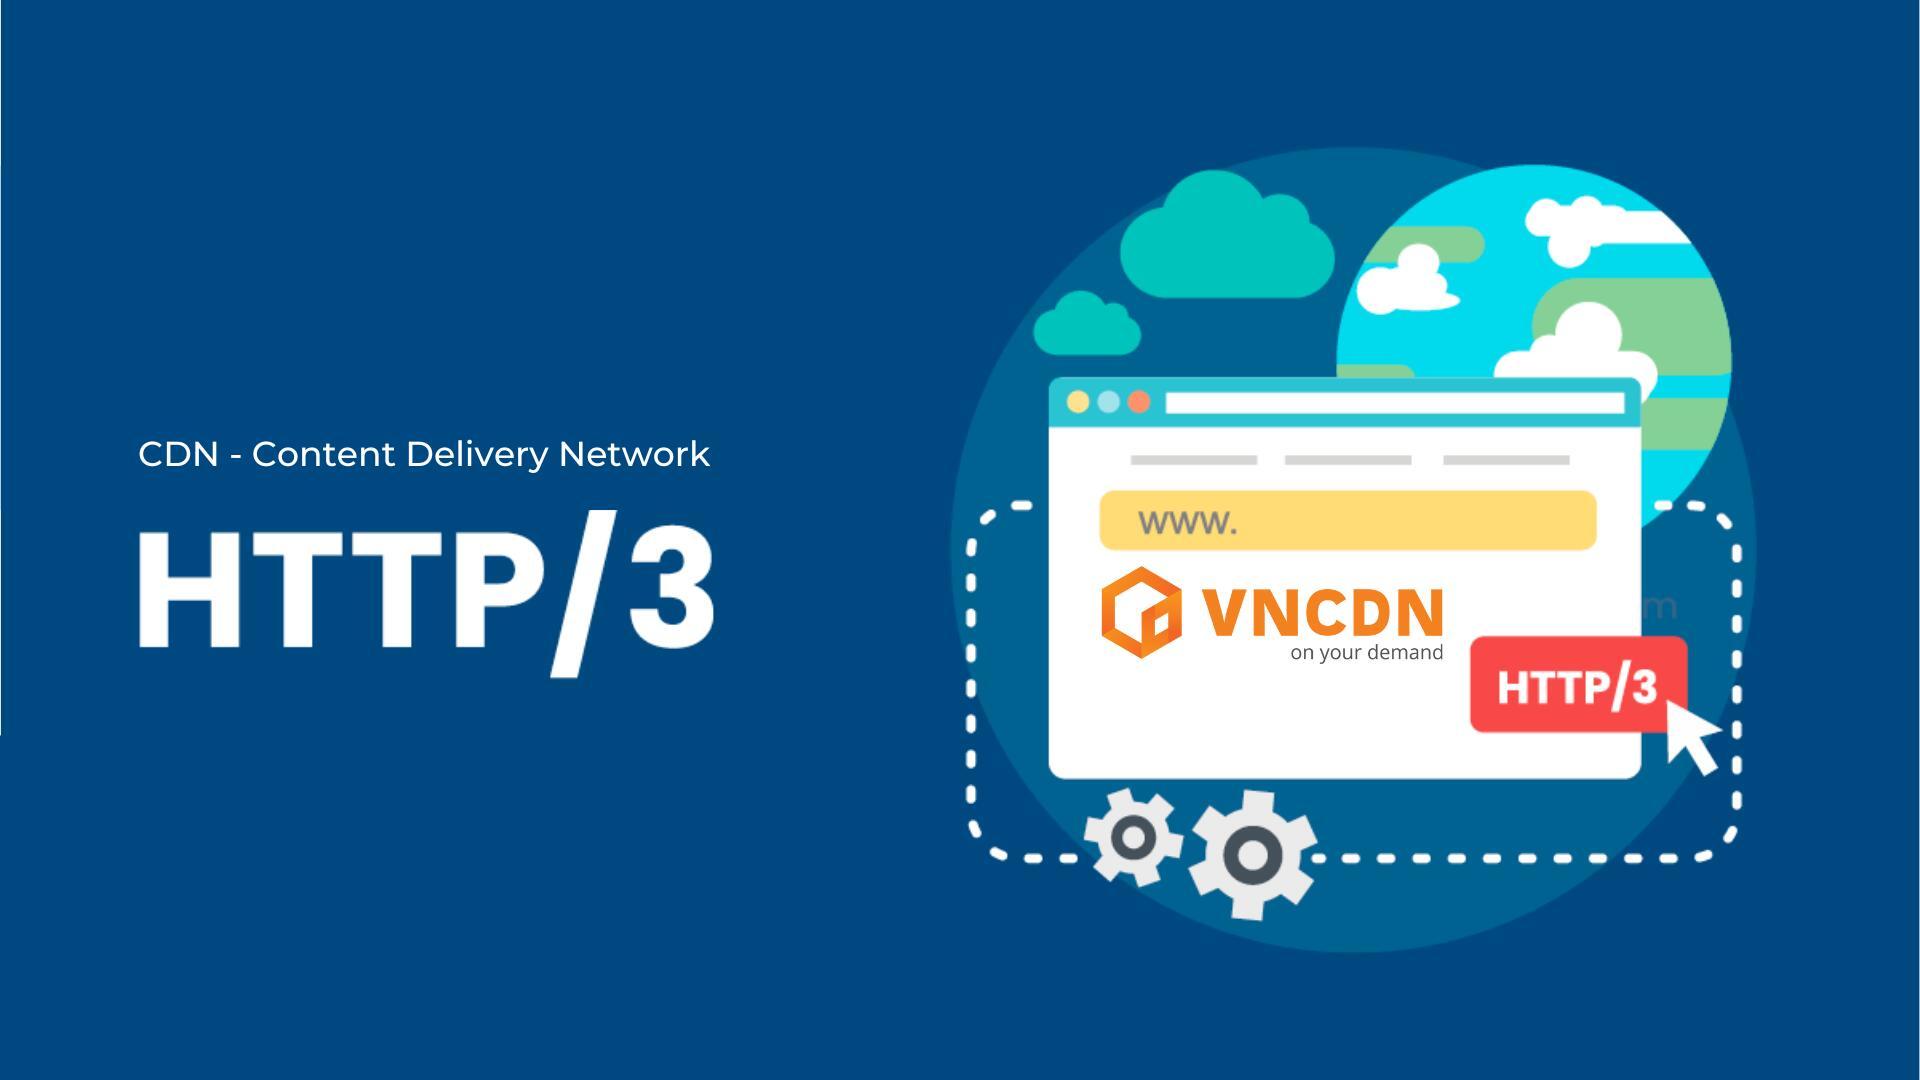 VNCDN chính thức hỗ trợ HTTP/3 tăng tốc hiệu năng website 